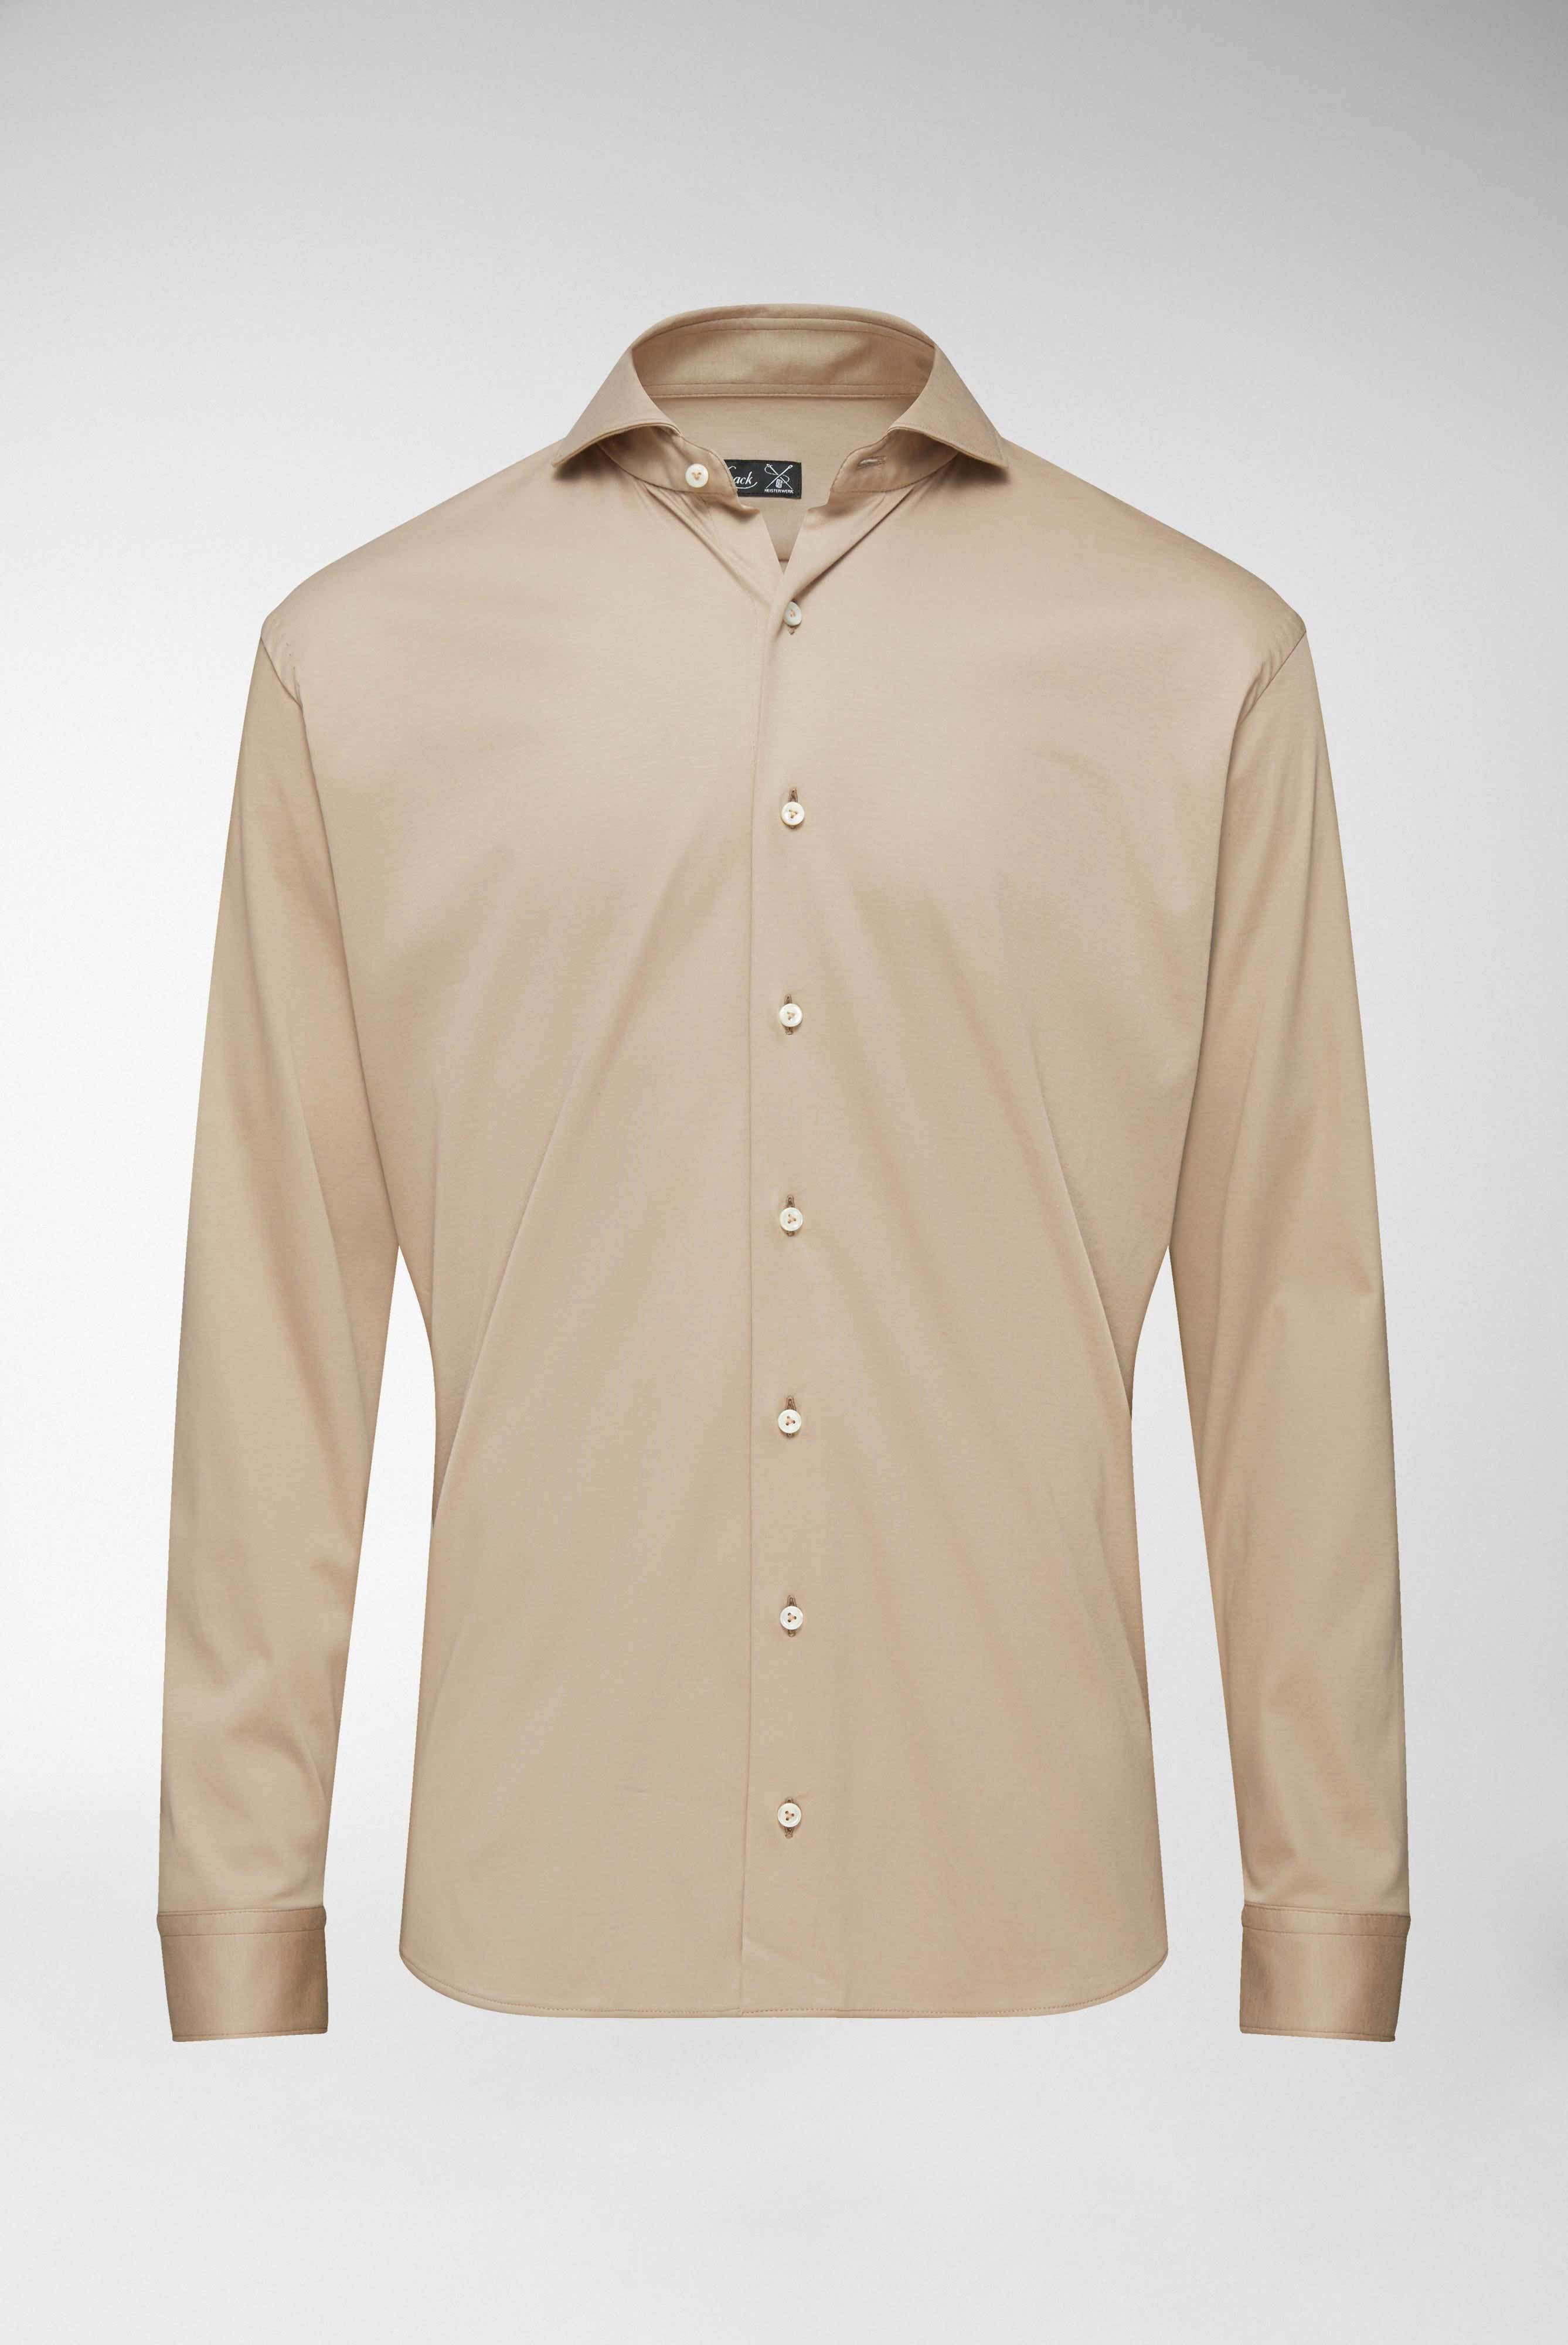 Casual Hemden+Jersey Hemd aus Schweizer Baumwolle Tailor Fit+20.1683.UC.180031.140.M